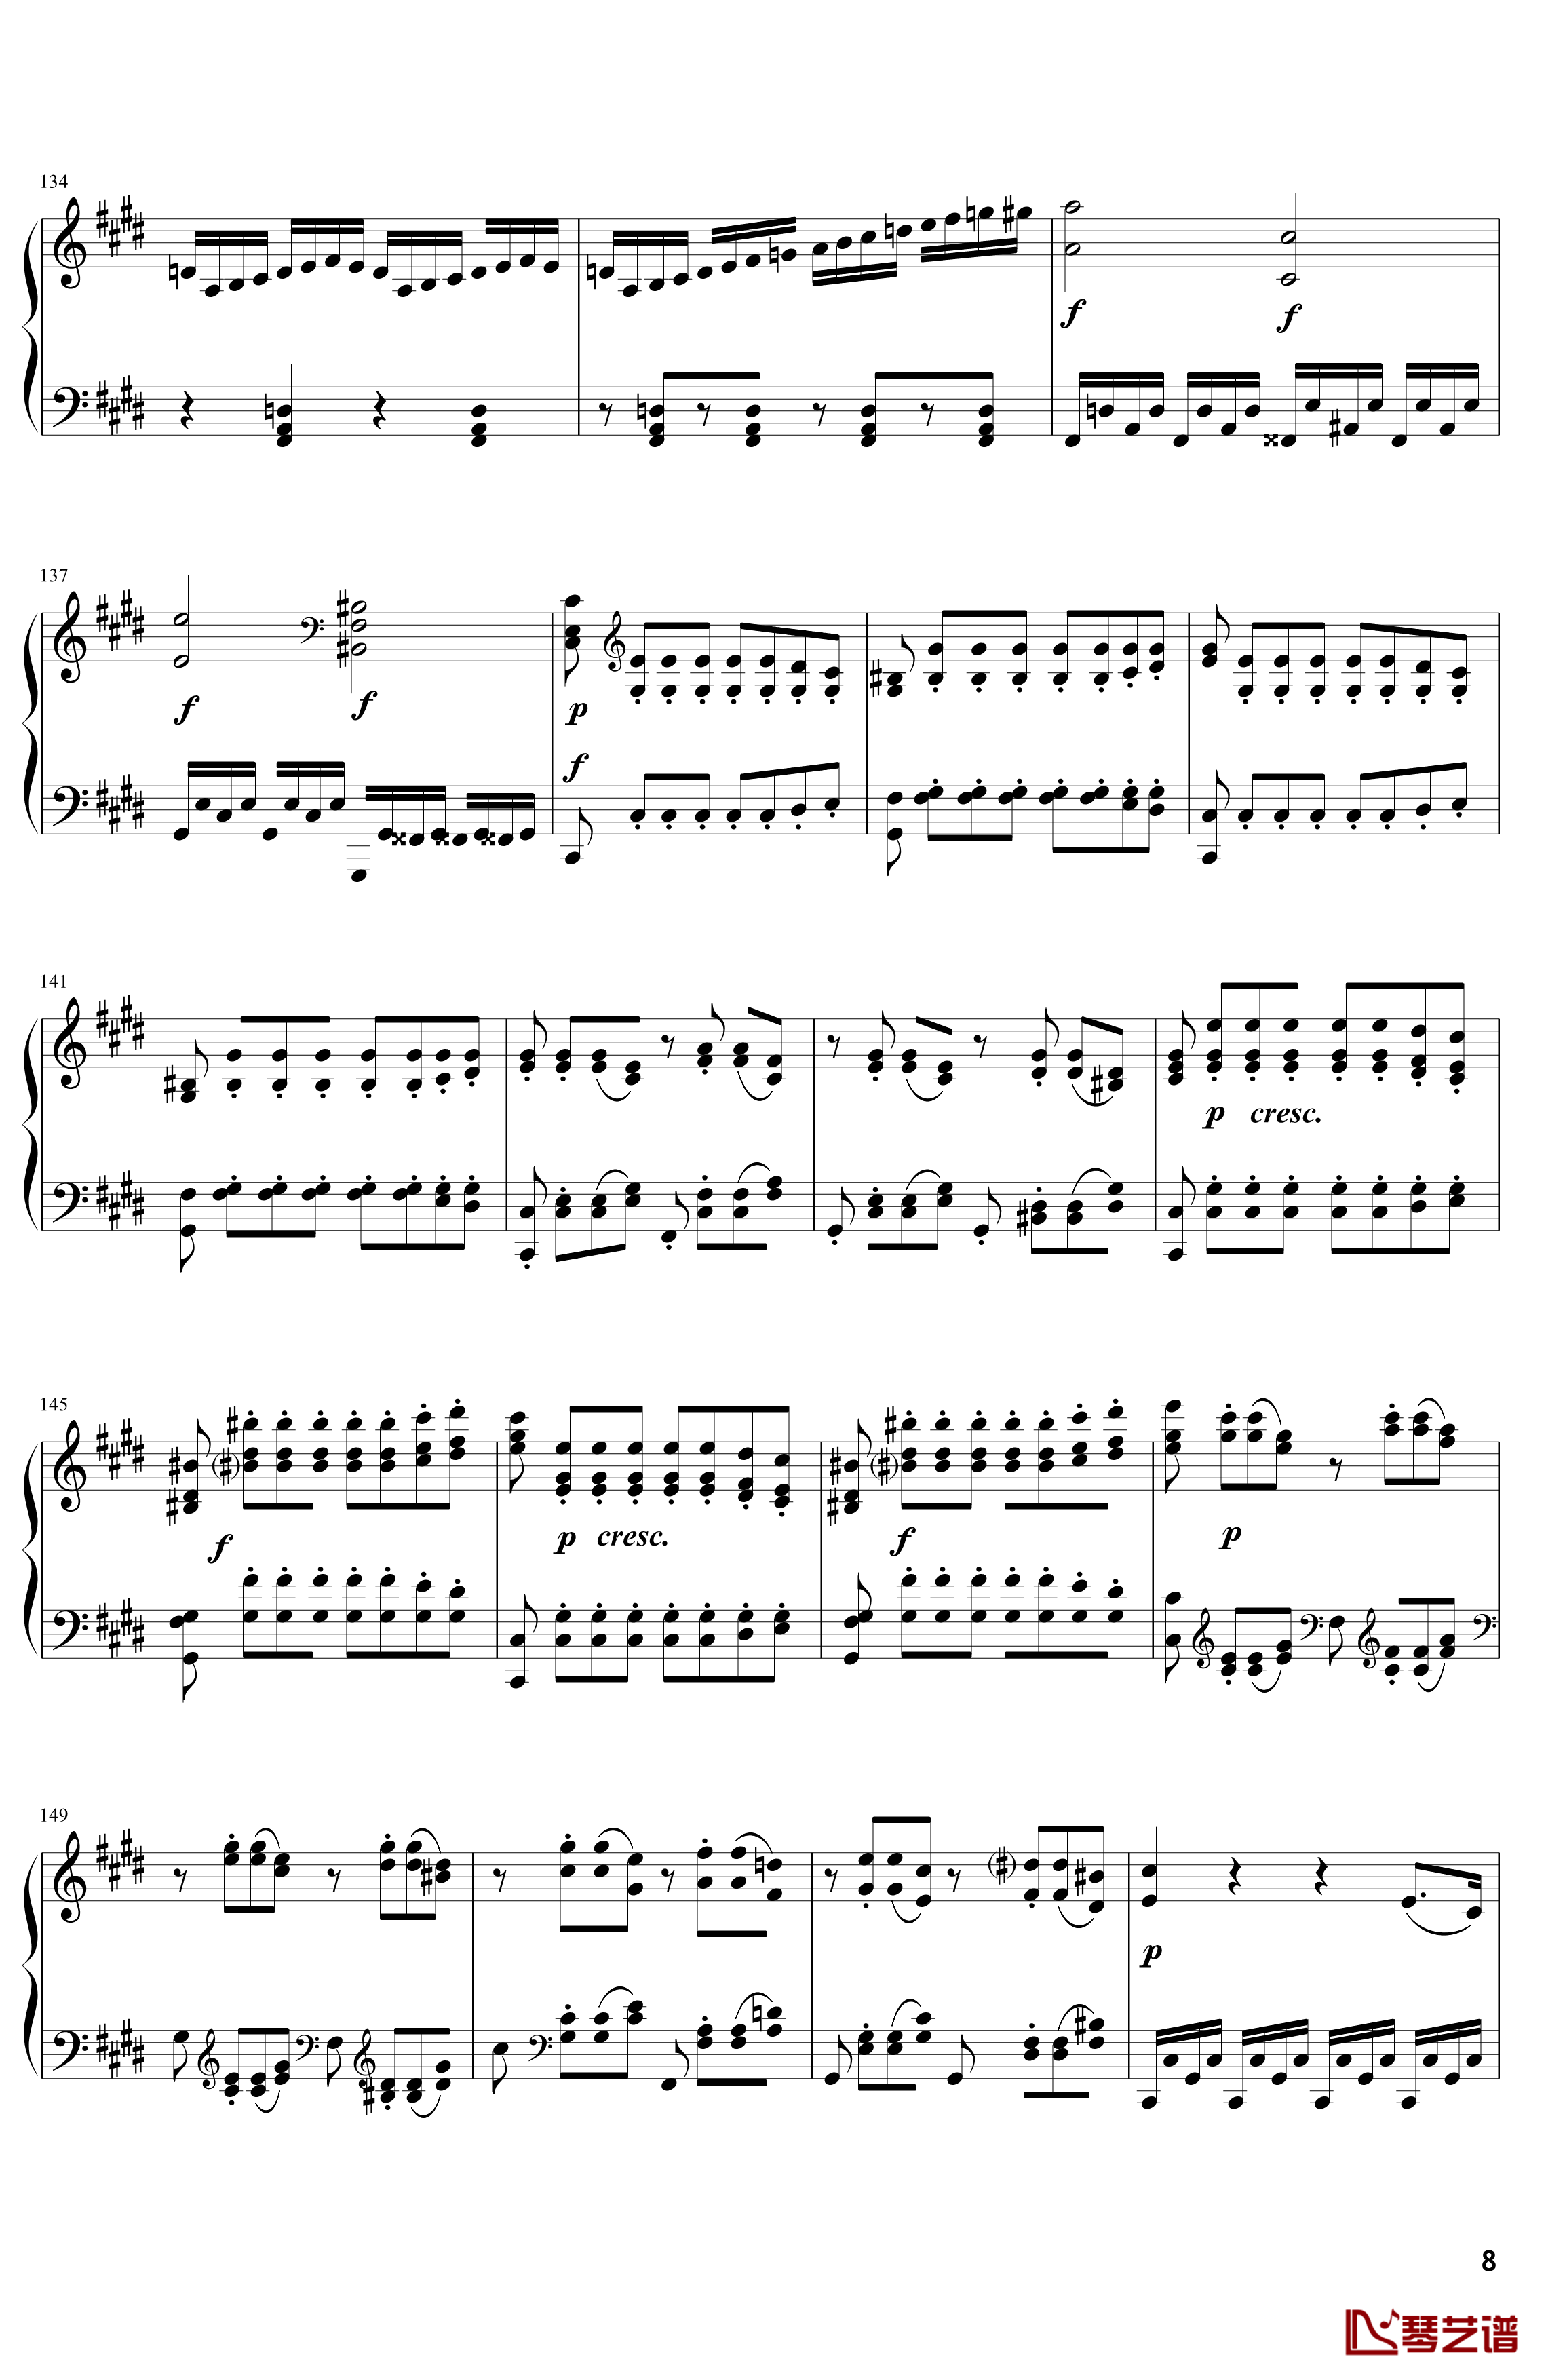 月光钢琴谱-奏鸣曲-贝多芬-beethoven8